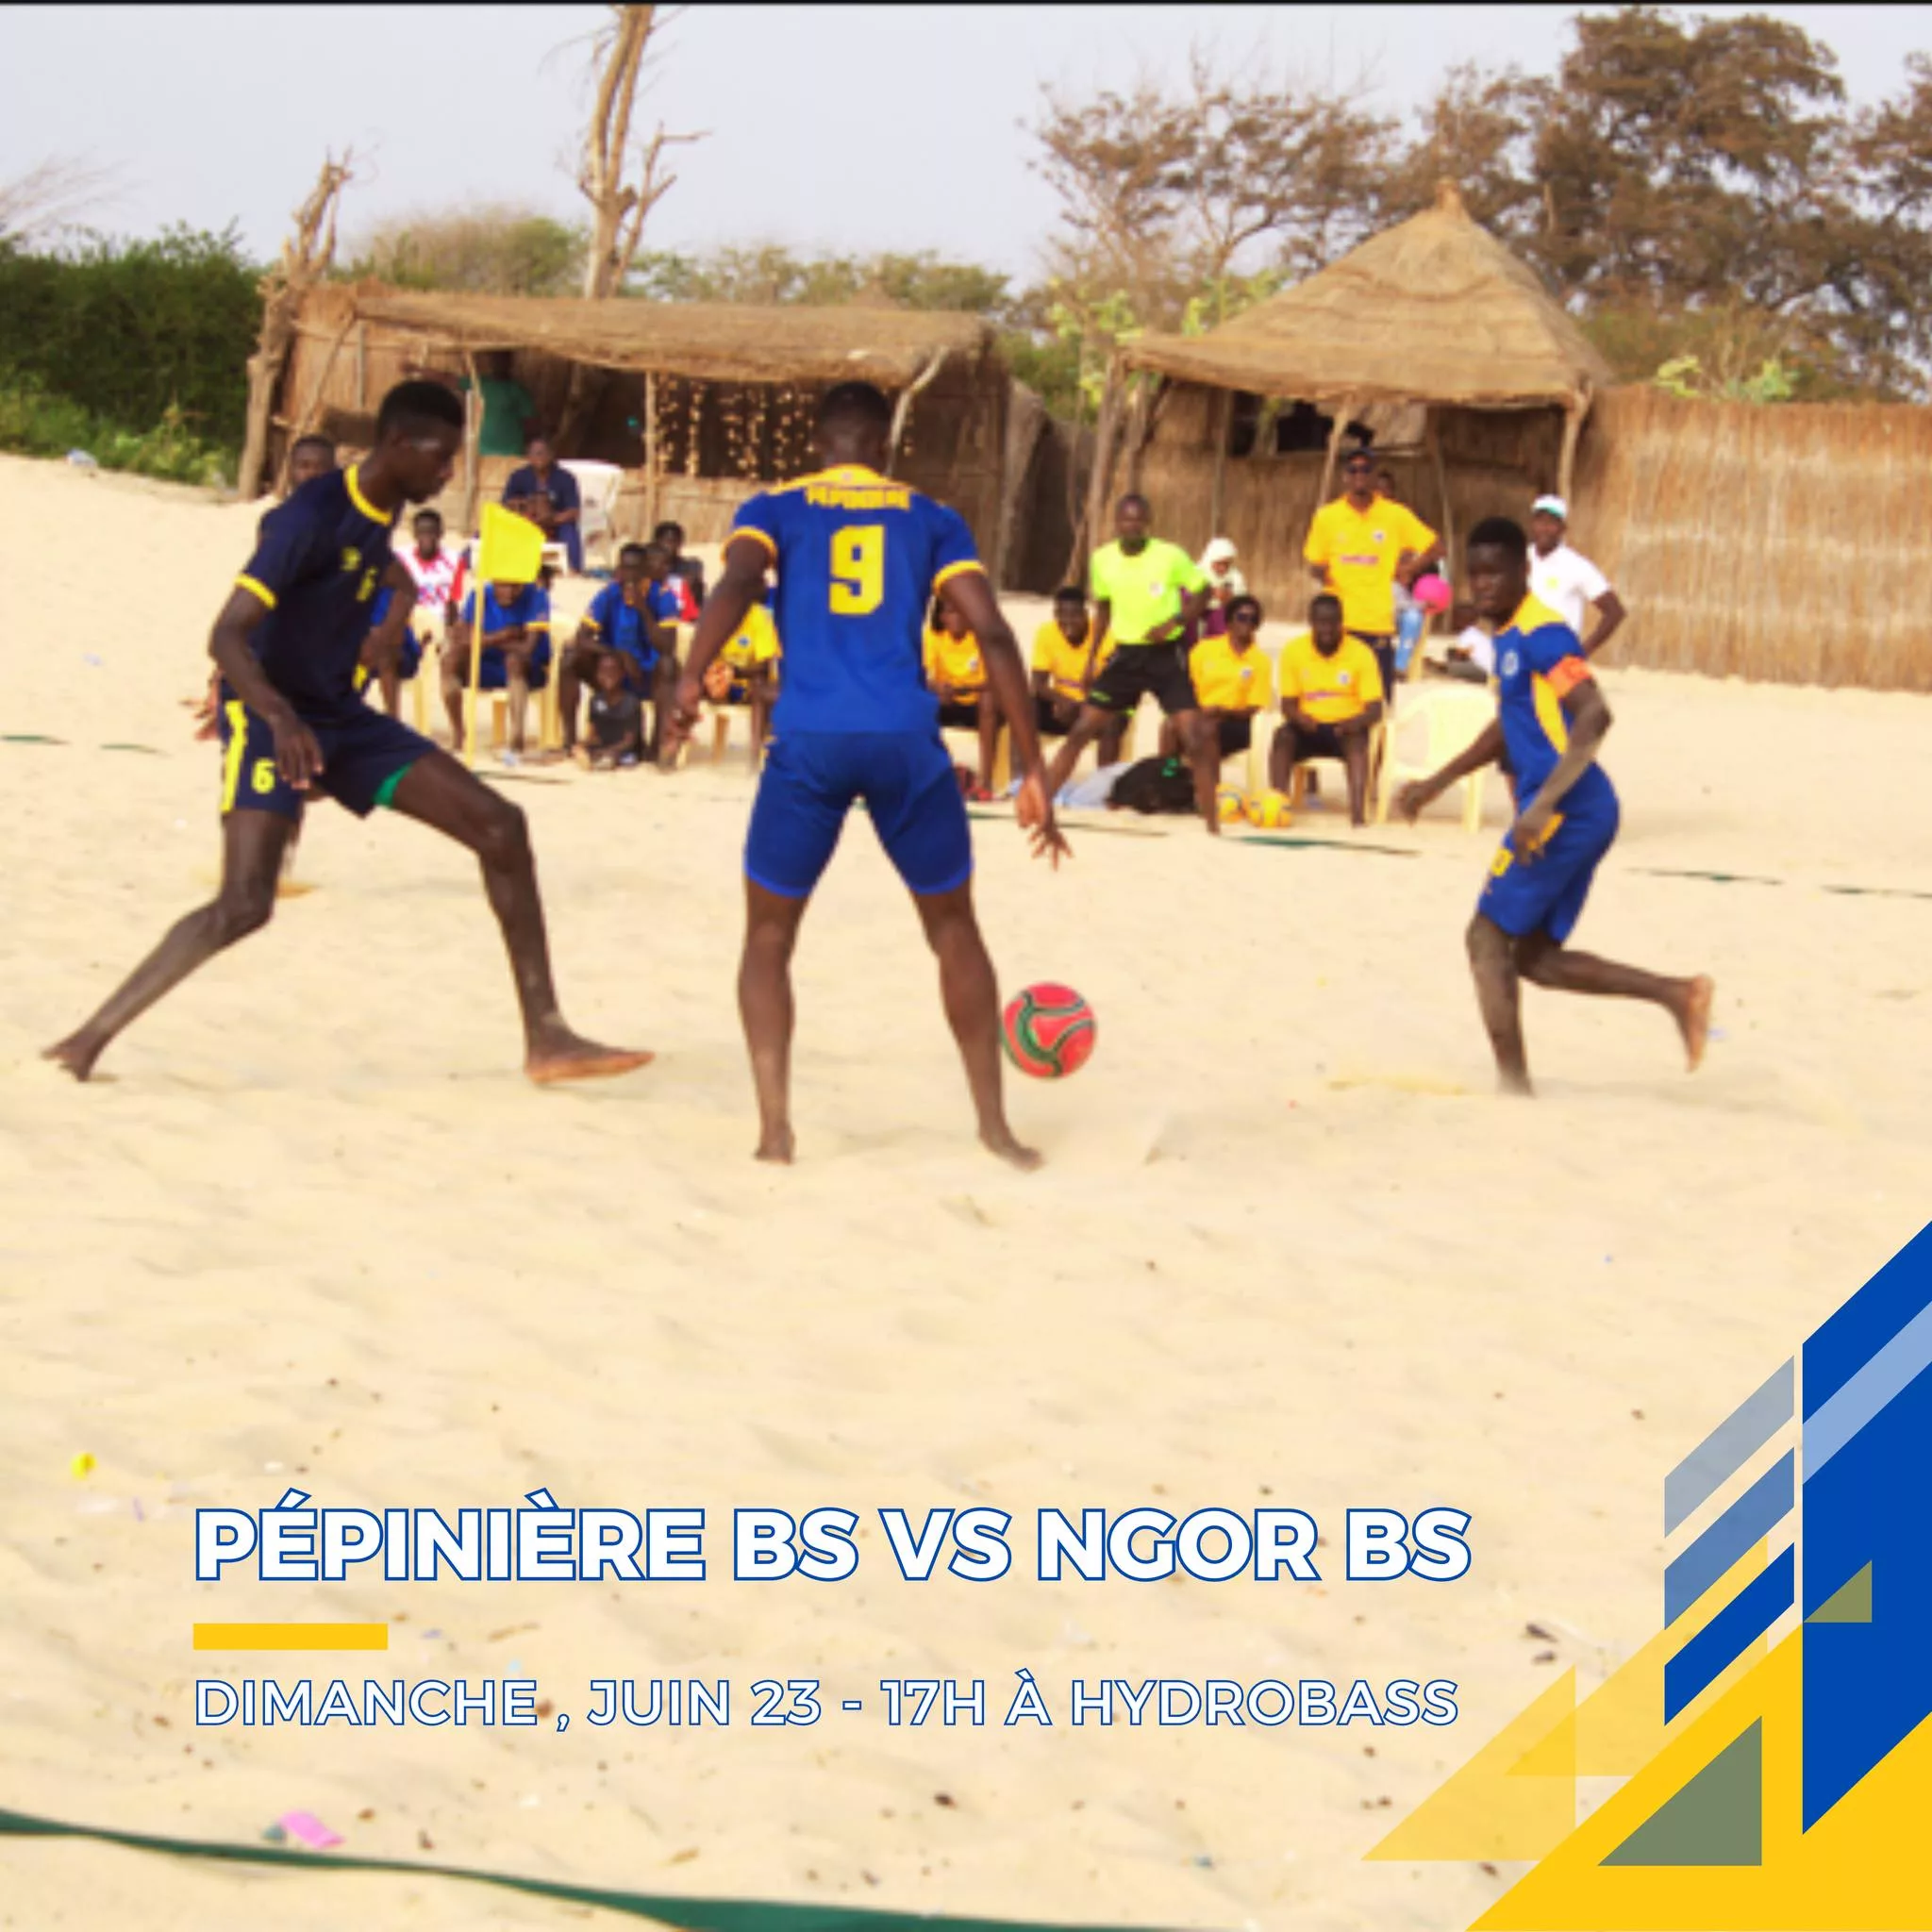 Pépinières vs Ngor Beach Soccer